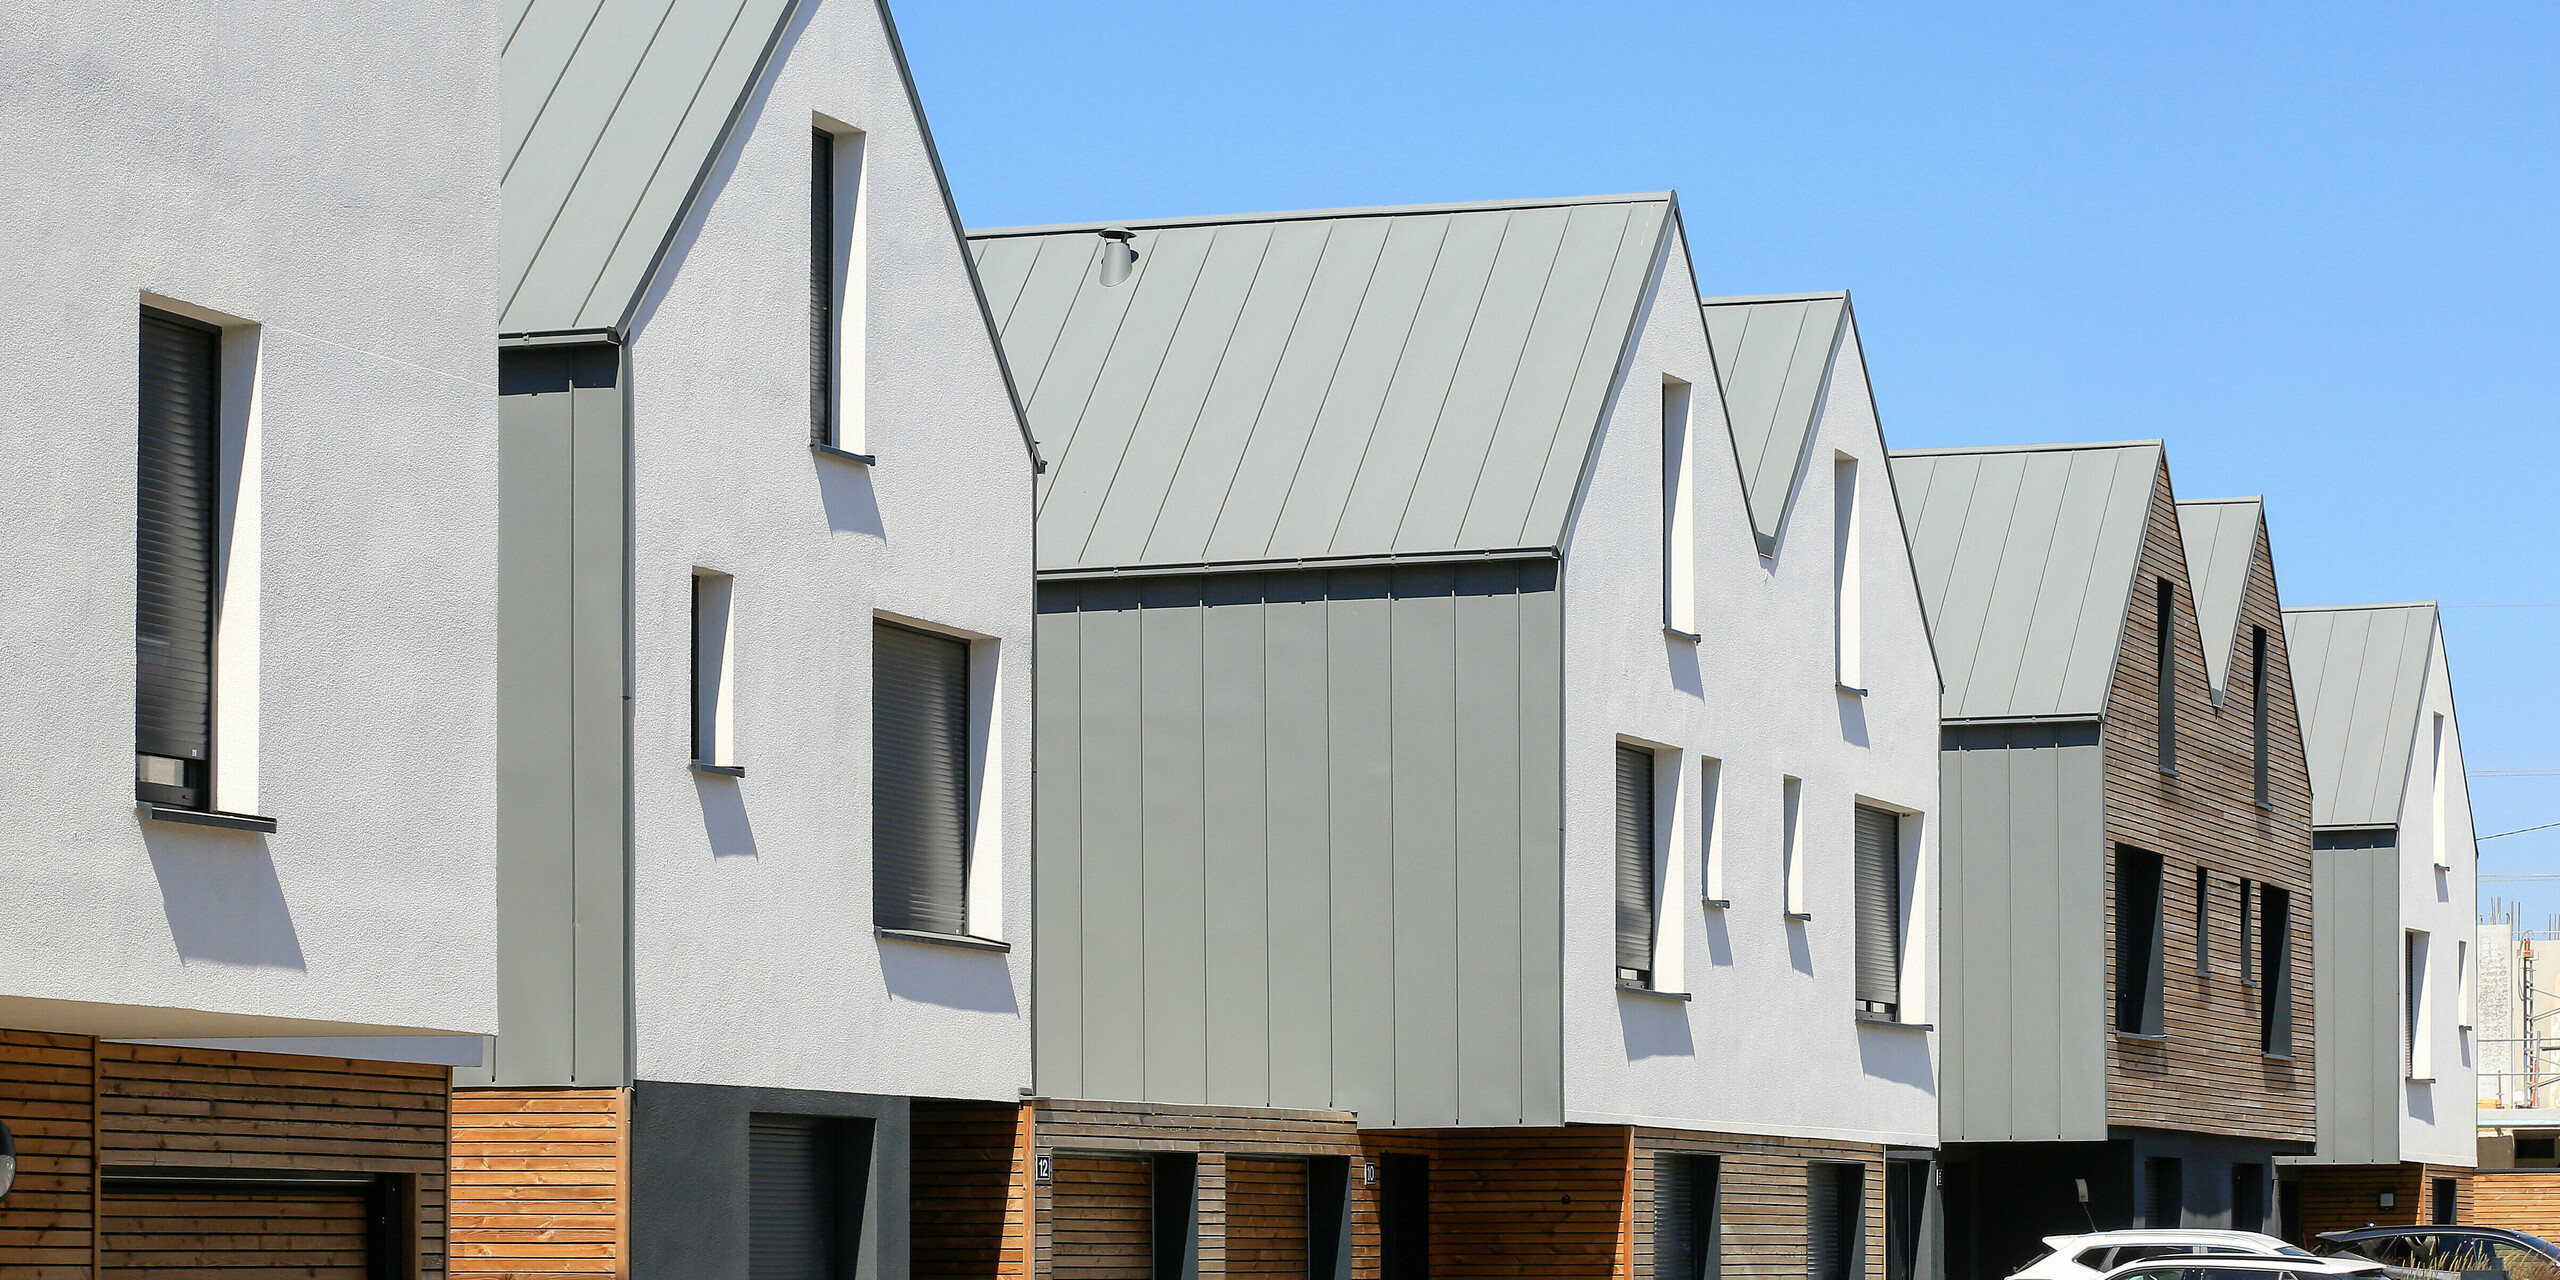 PREFALZ in Hellgrau zieht sich über die Fassaden und Satteldächer einer Reihenhaus-Siedlung in Mundolsheim. Die einheitlichen Gebäudehüllen aus Aluminium schaffen ein harmonisches Gesamtbild.